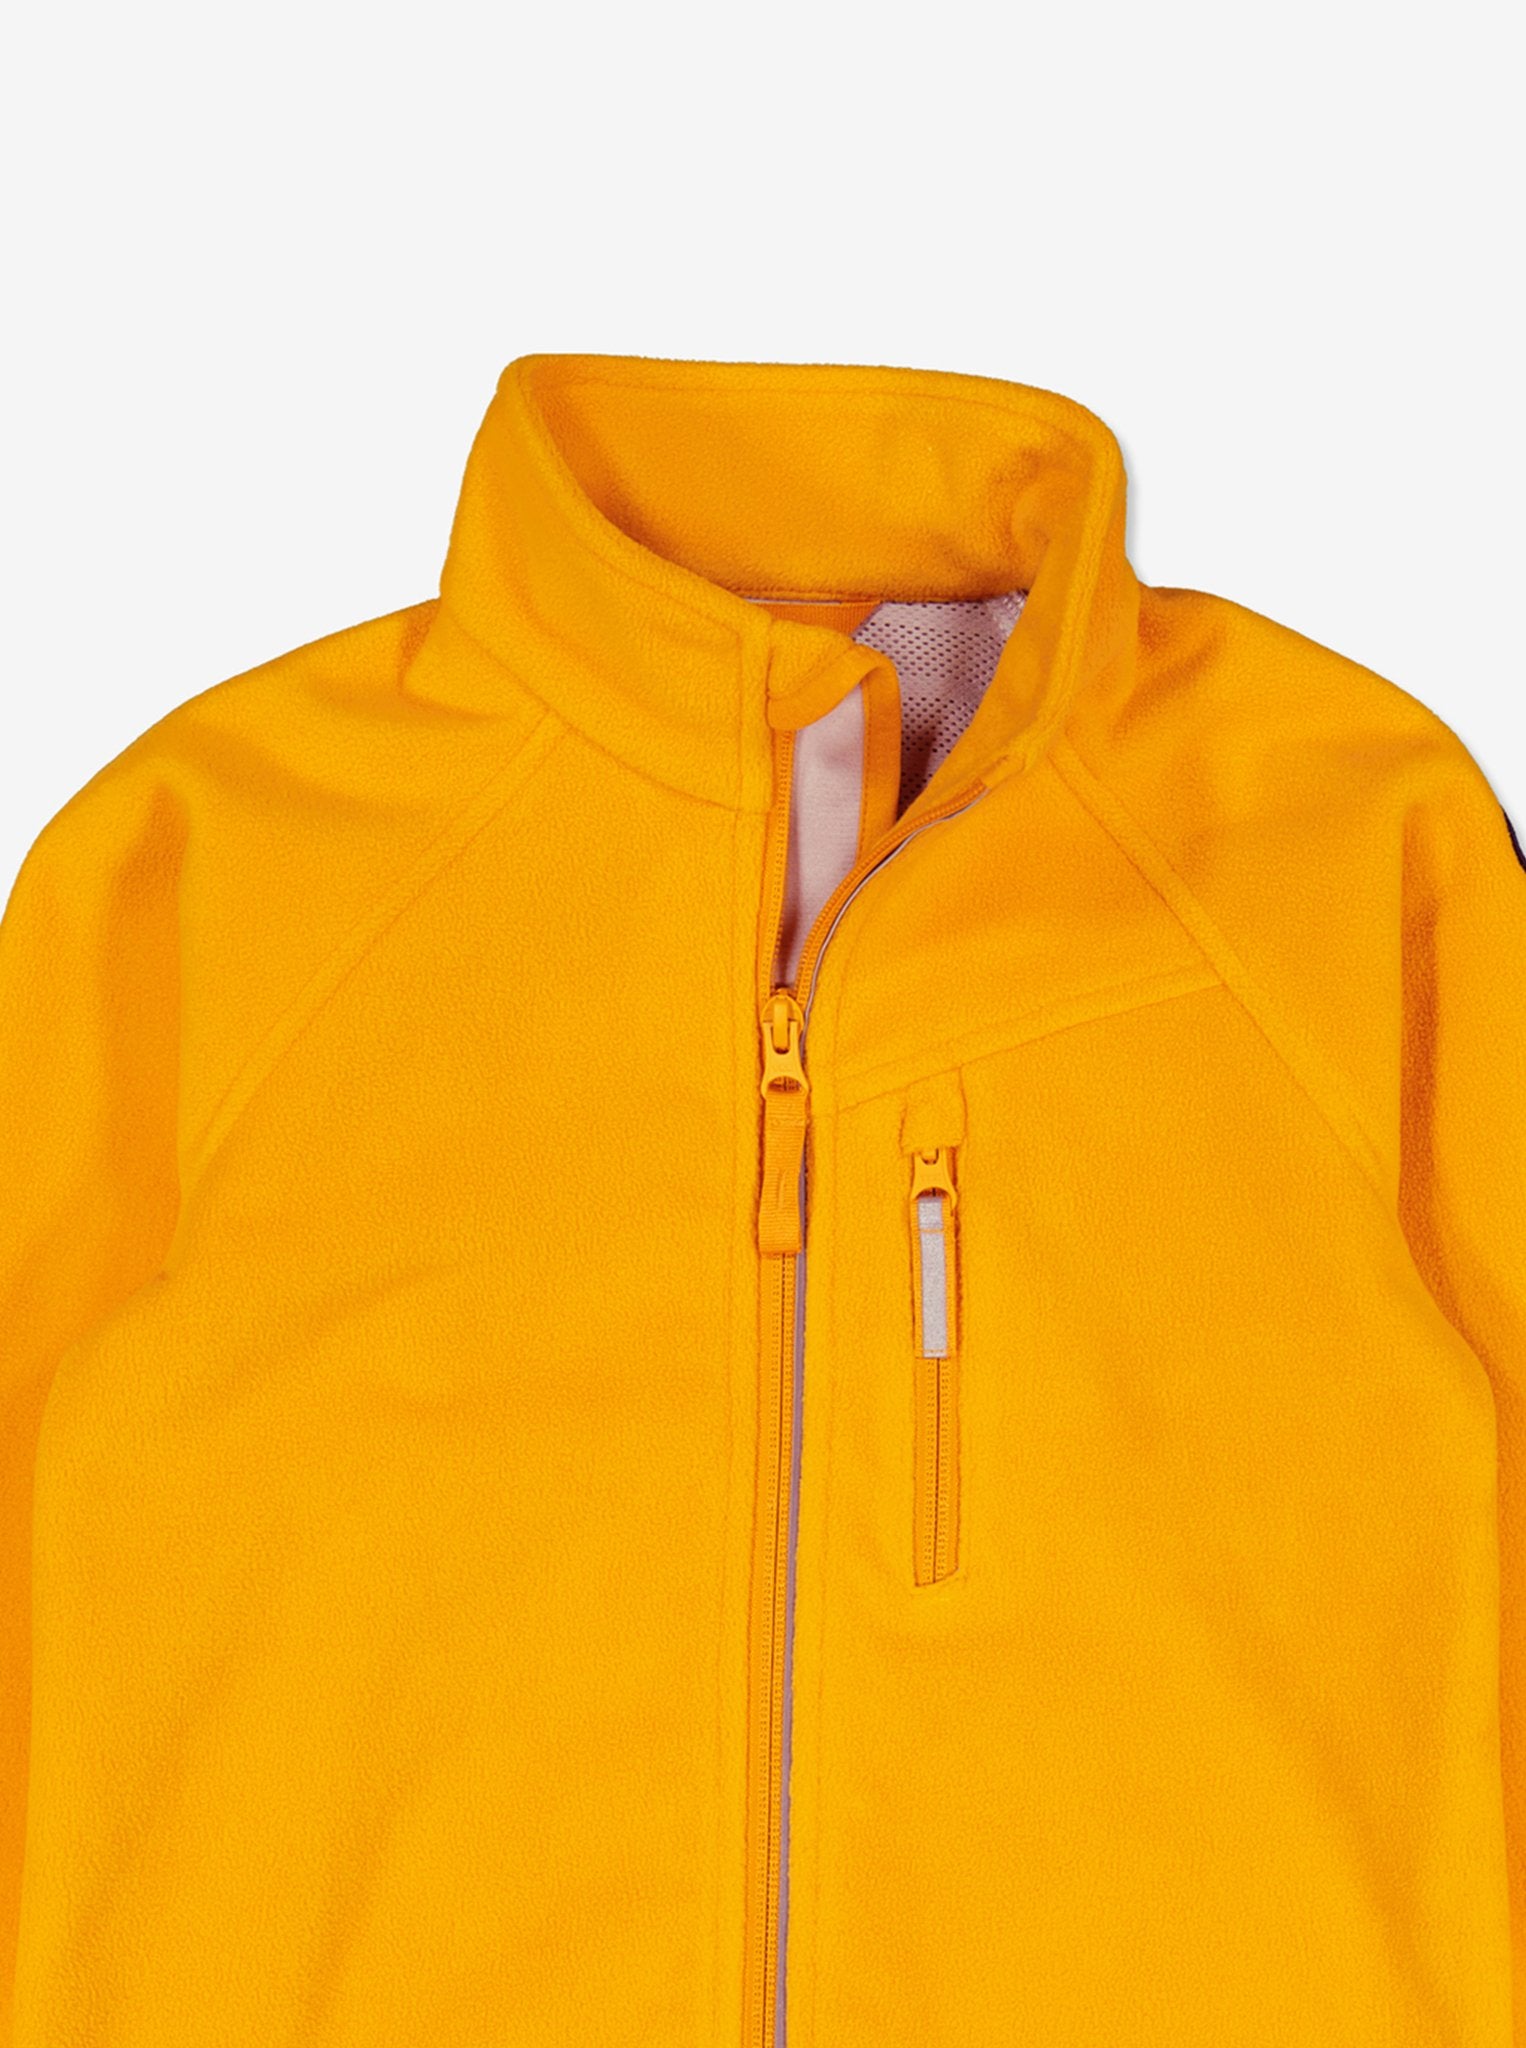 Yellow Kids Showerproof Fleece Jacket from Polarn O. Pyret Kidswear. Quality Kids Fleece Jacket